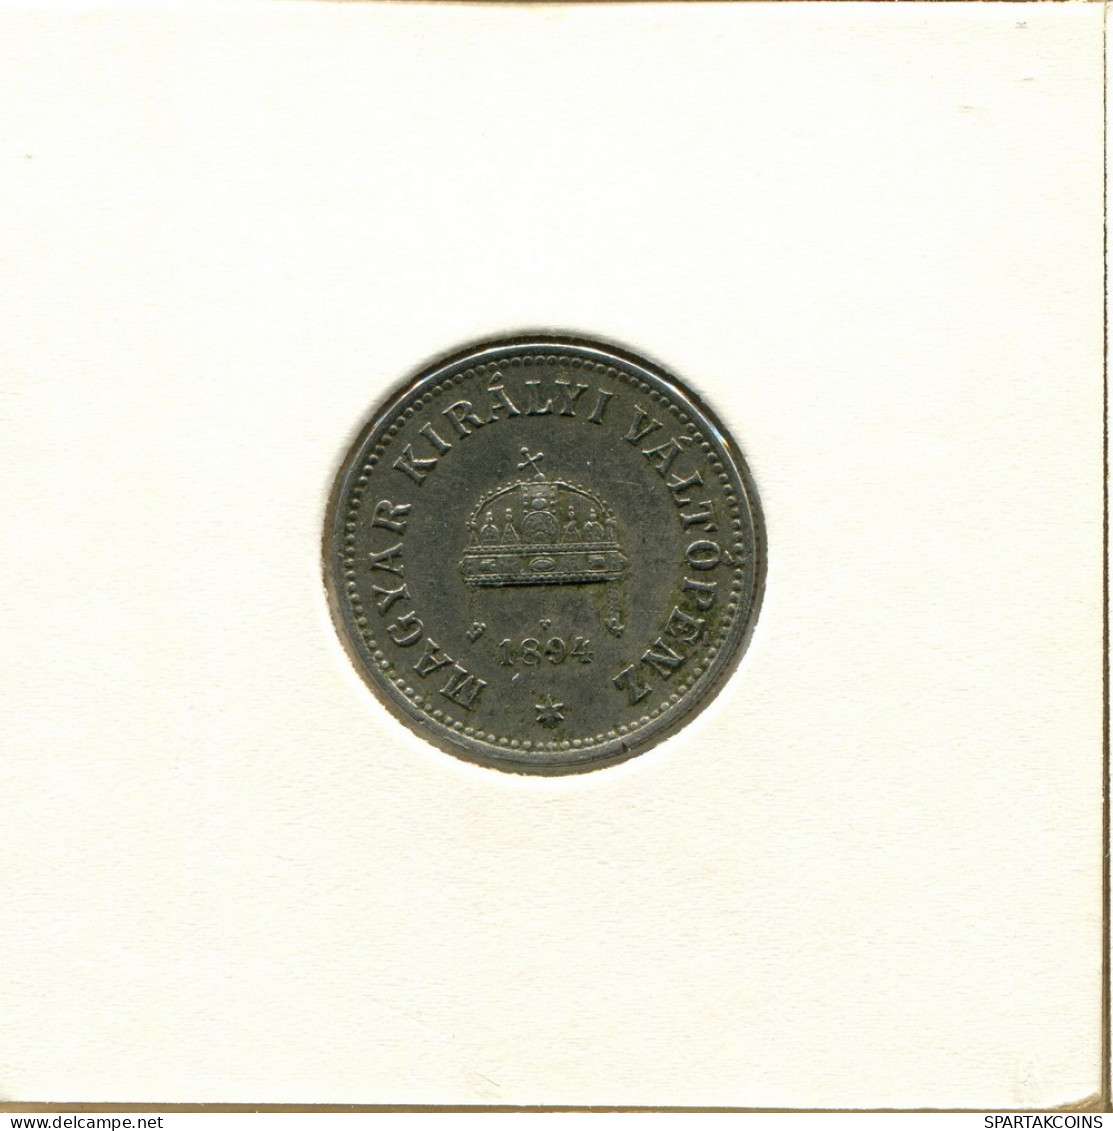 10 FILLER 1894 HUNGARY Coin #AY423.U.A - Hungary